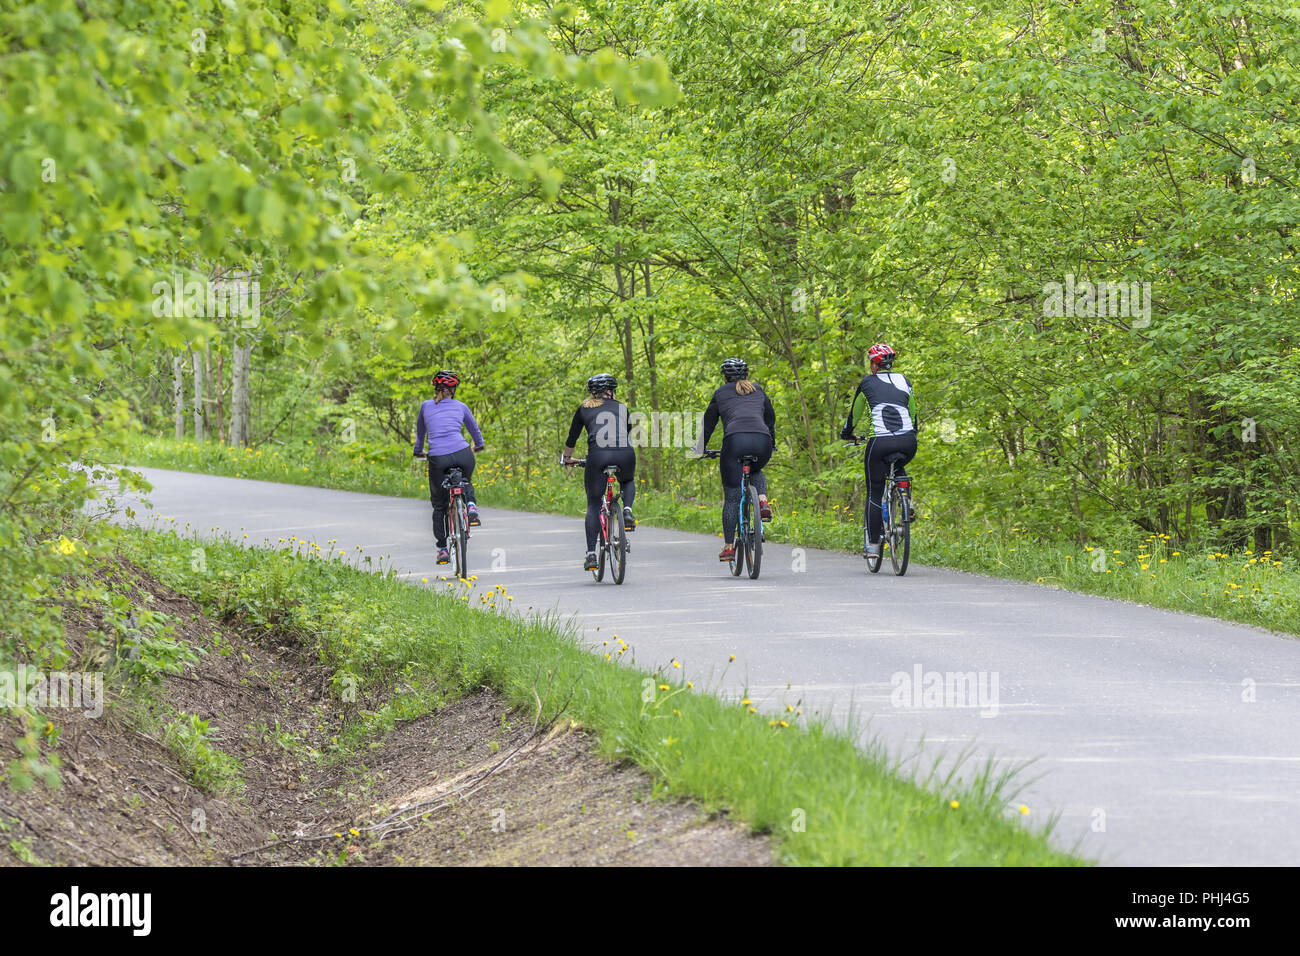 Les cyclistes sur route, dans une forêt à l'été Banque D'Images